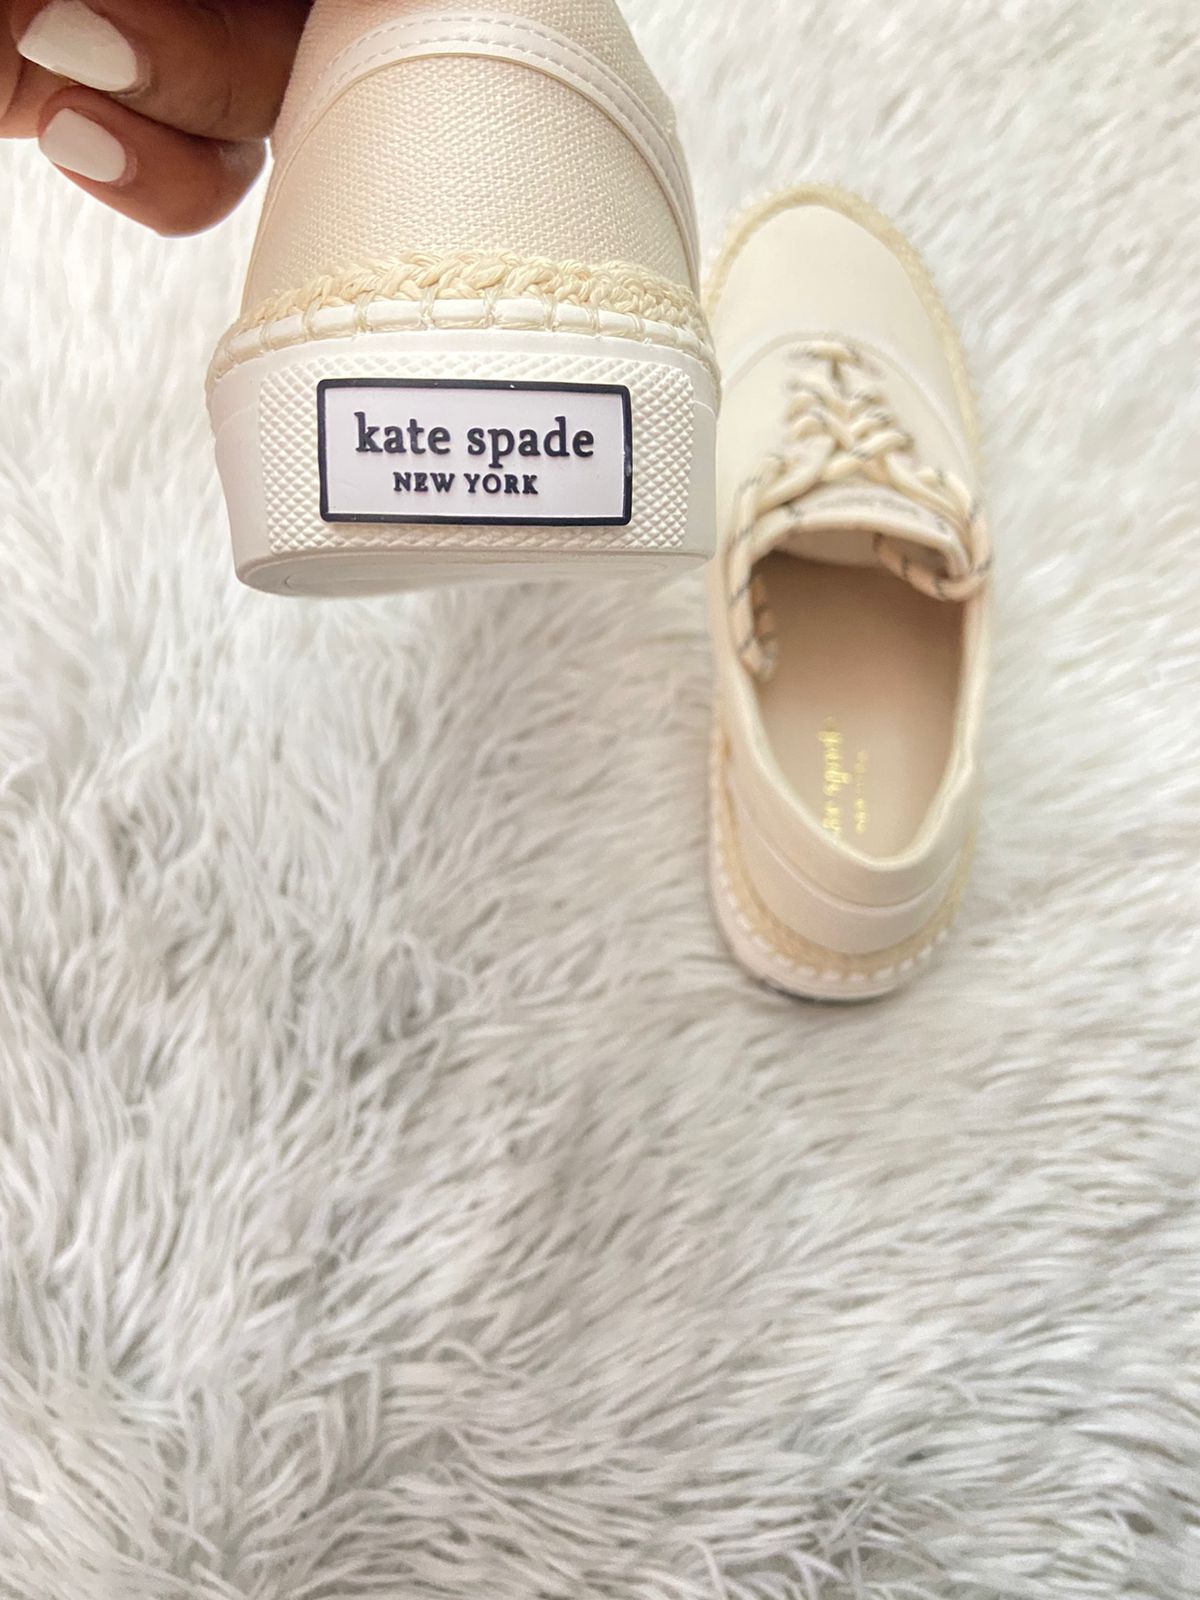 Tenis/ Zapatos Kate Spade New York original, color crema con borde en costura en hilo y cordones con puntos negros.